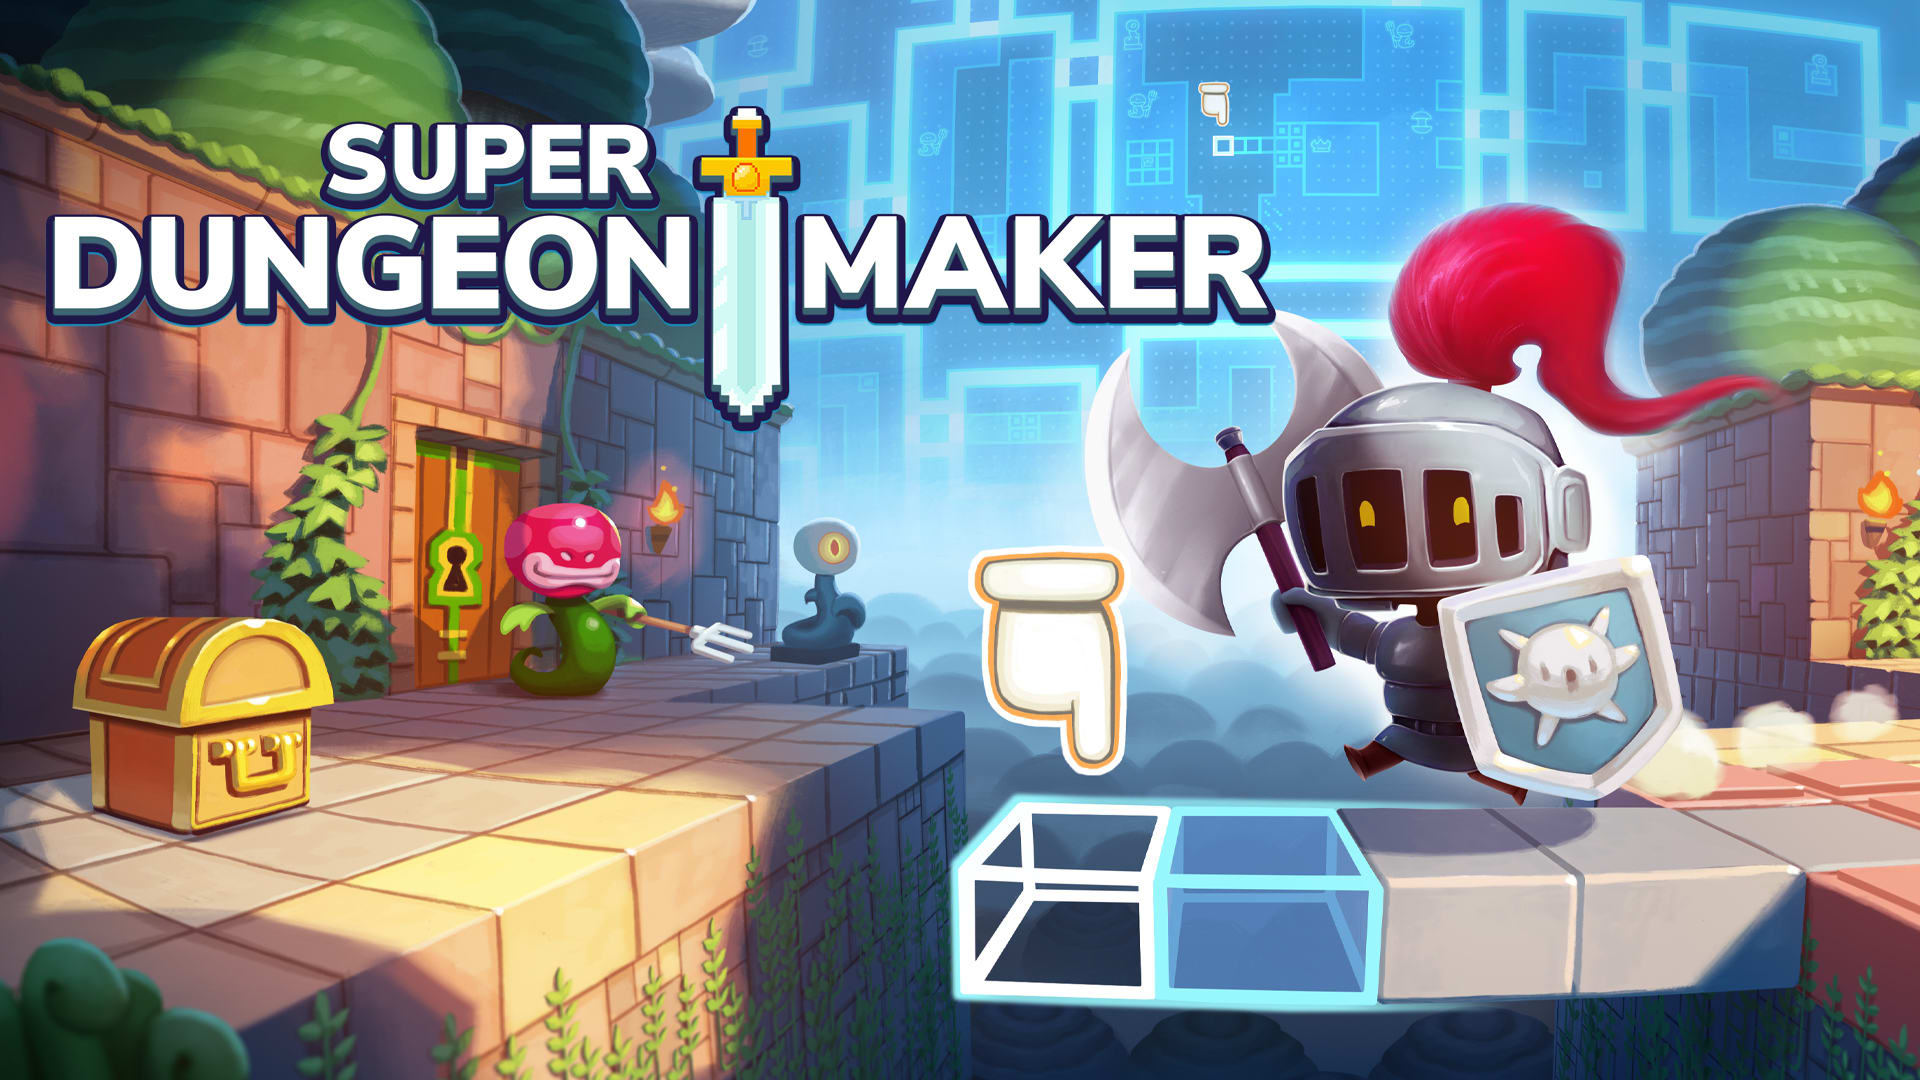 Super Dungeon Maker: DIY Edition